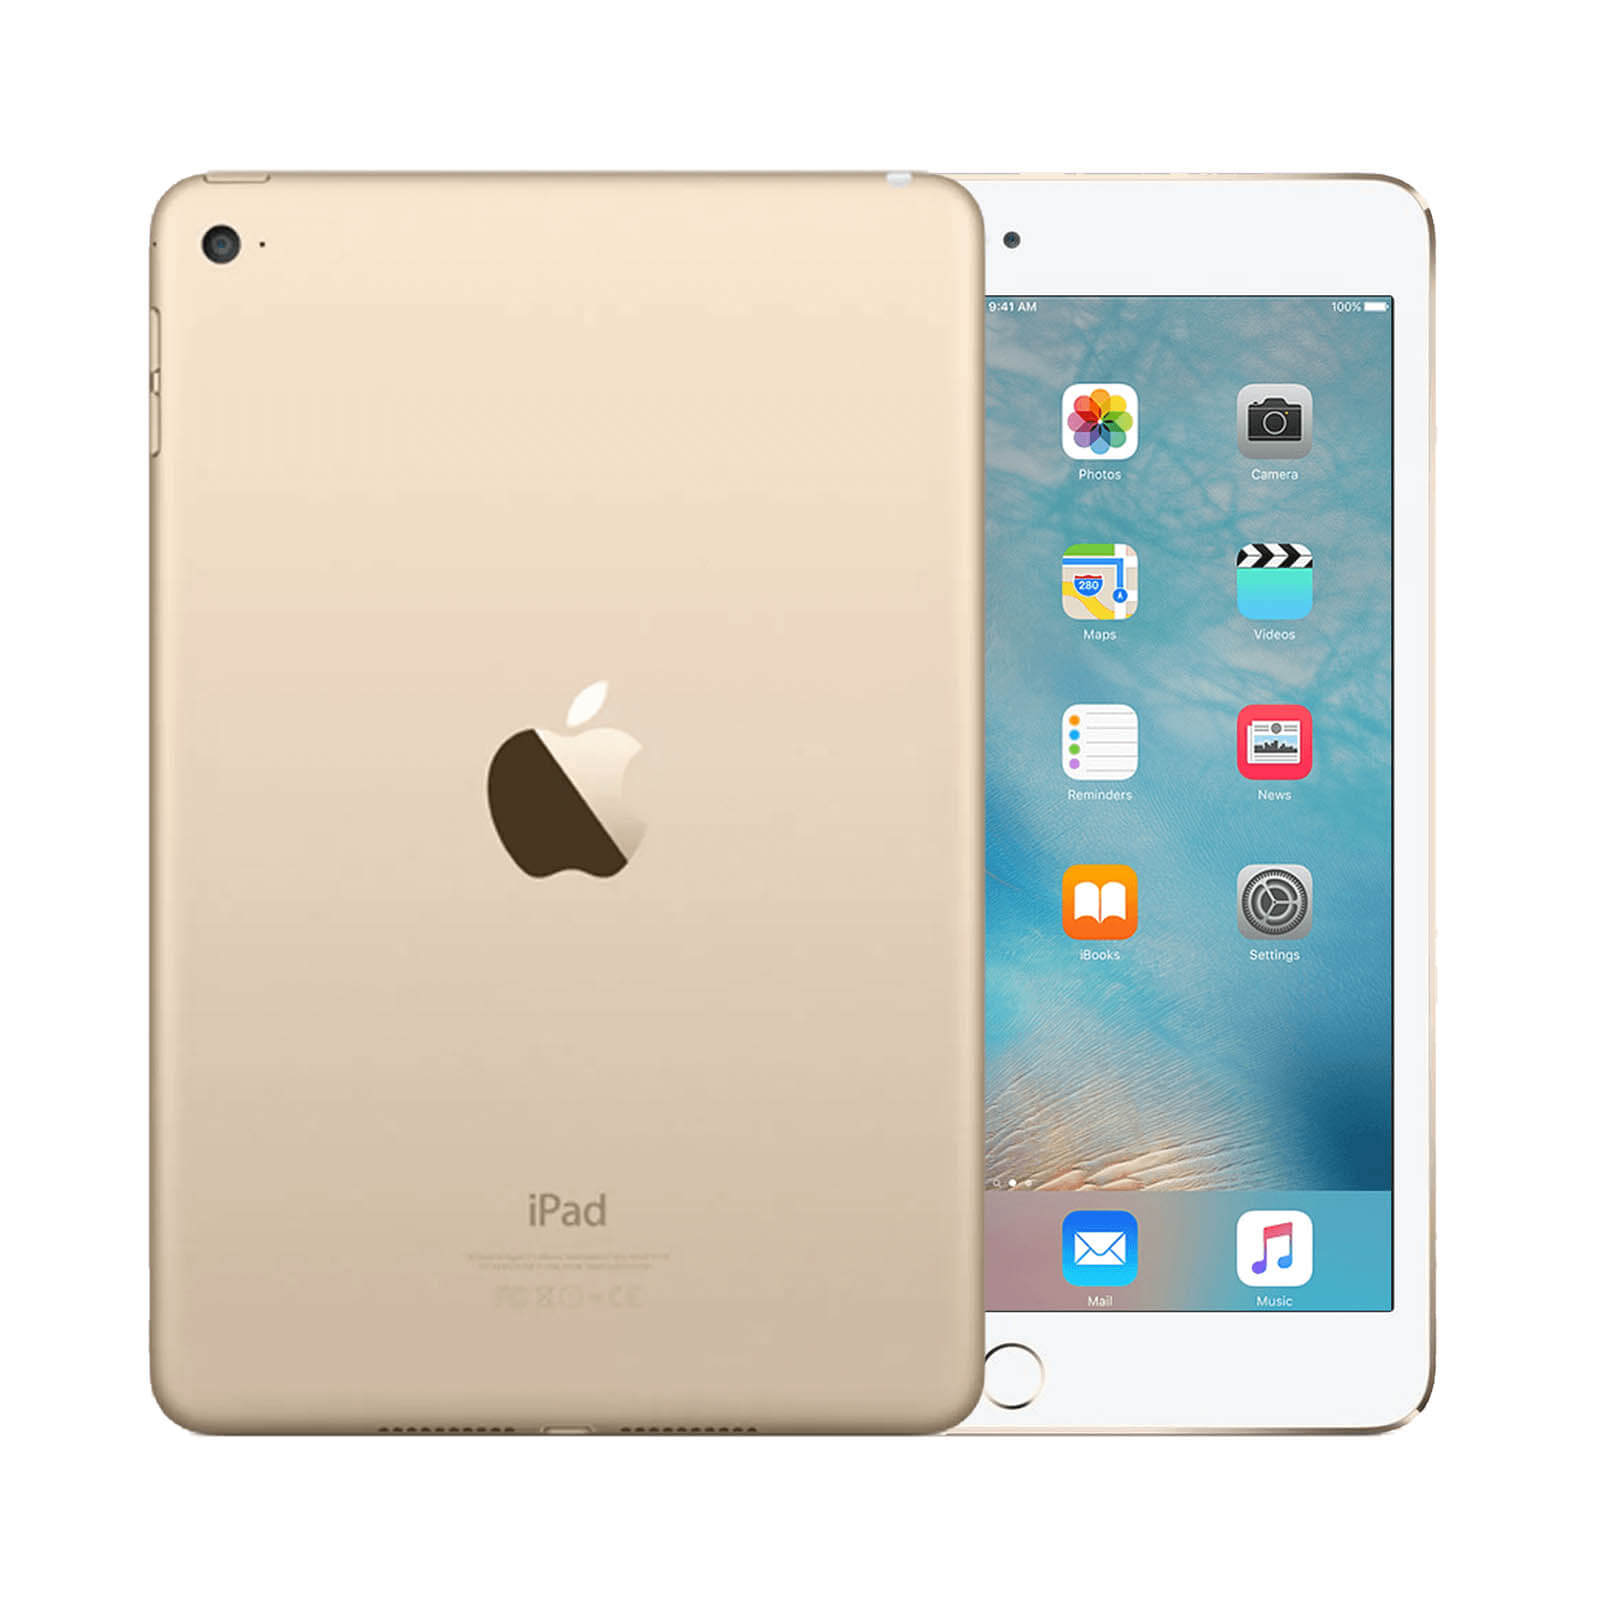 Apple iPad Mini 4 64GB Gold WiFi - Very Good 64GB Gold Very Good